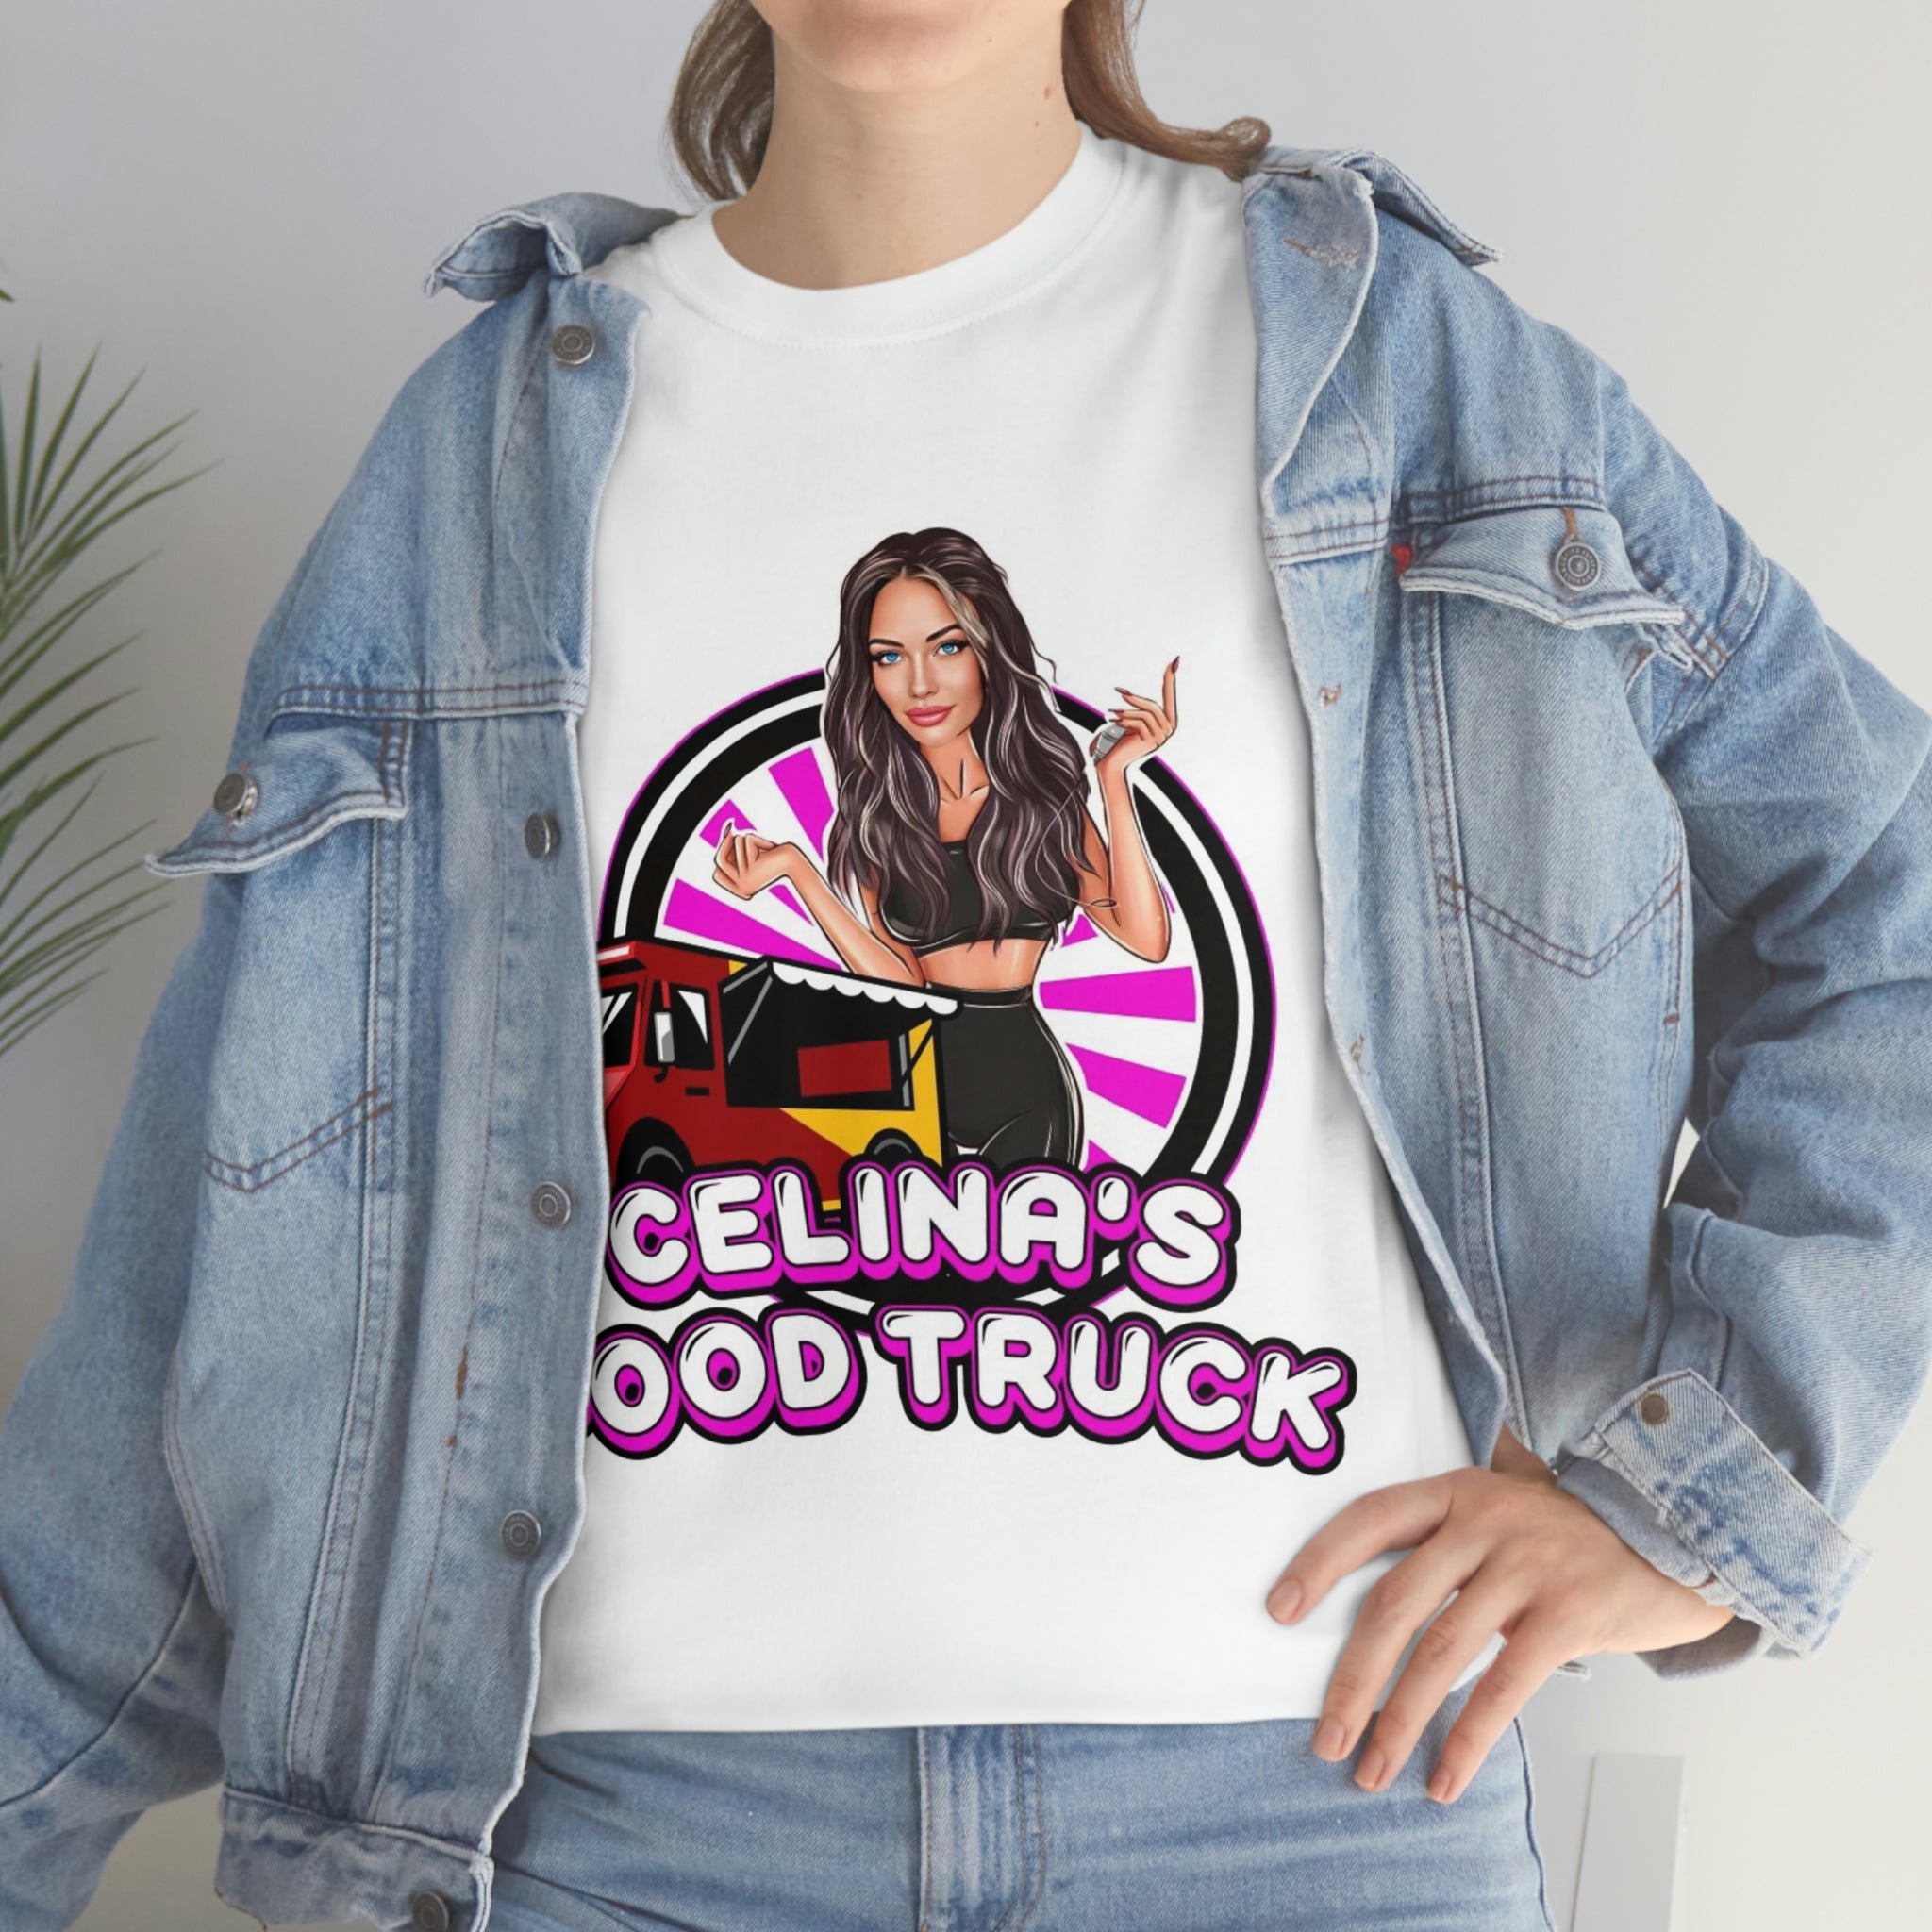 Celina's Food Truck Unisex Cotton Tee